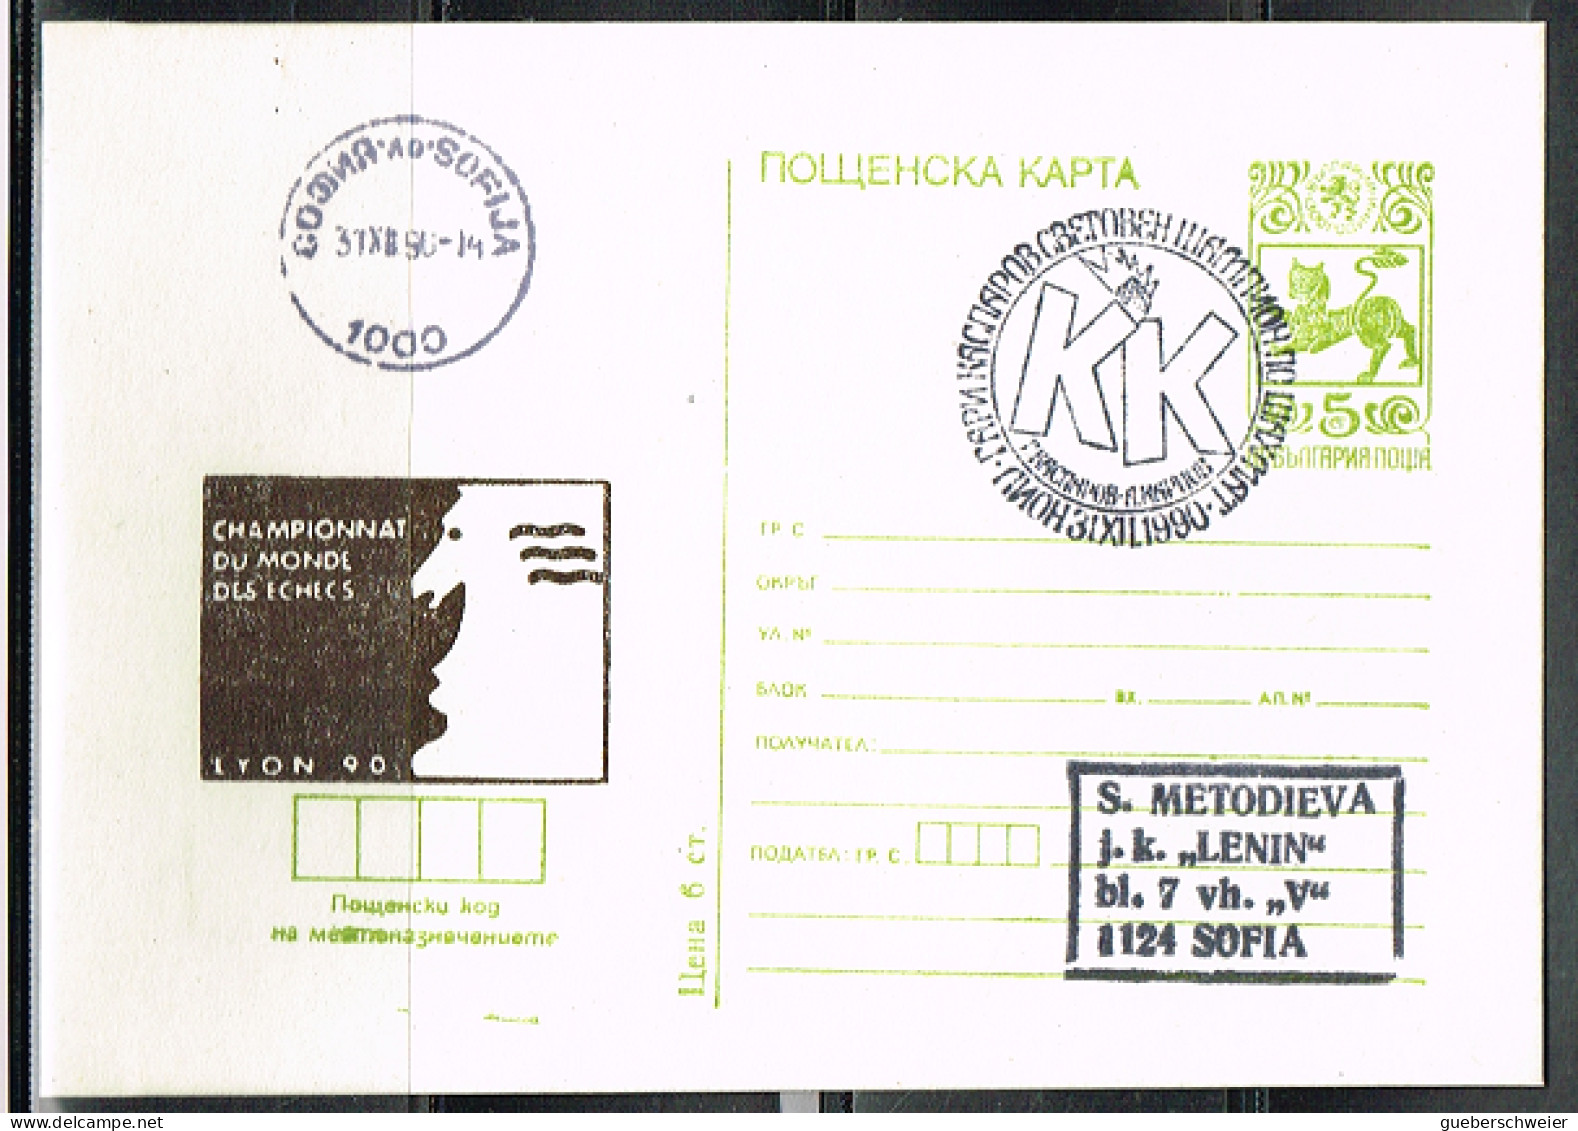 ECH L 25 - BULGARIE Entier Postal Illustré Championnat Du Monde D'Echecs  Lyon 1990 - Postales